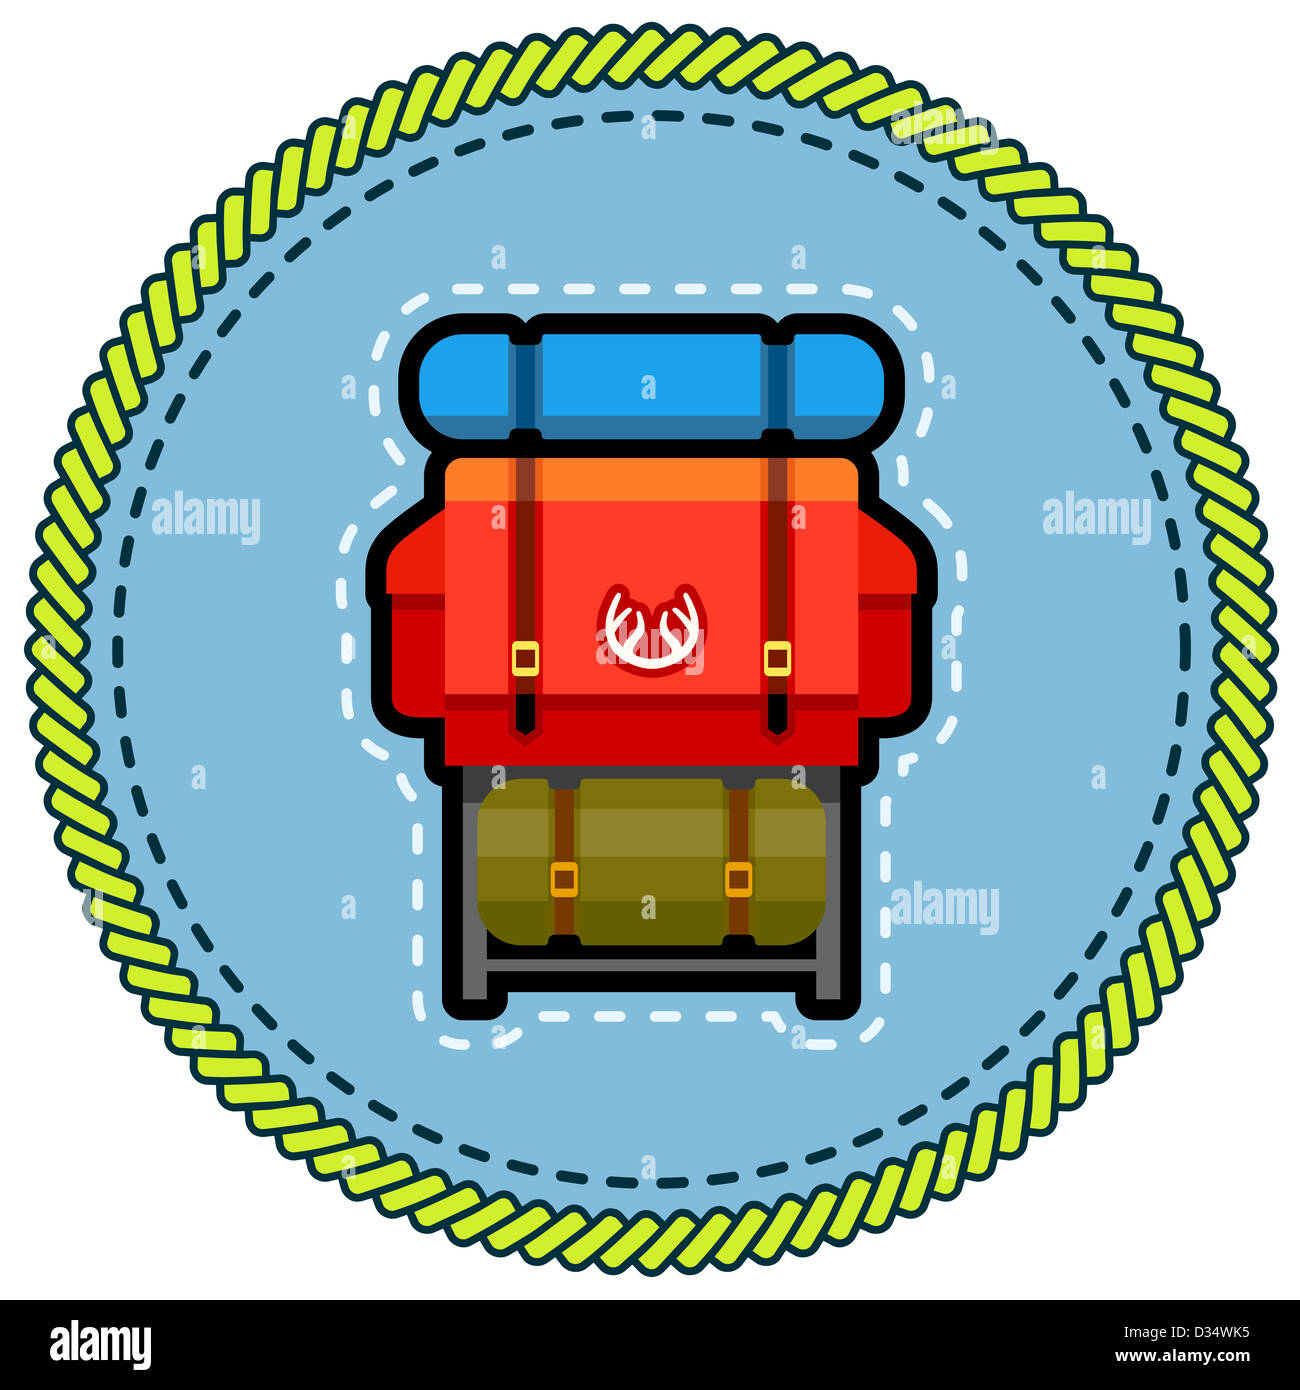 Sac à dos sur une illustration de l'emblème badge design patch Banque D'Images